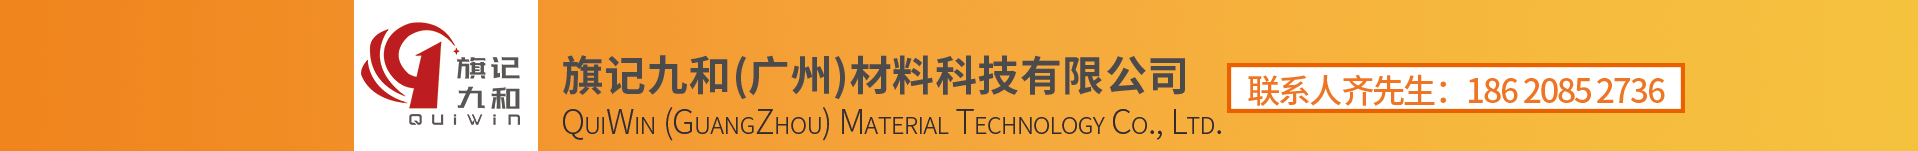 旗记九和(广州)材料科技有限公司